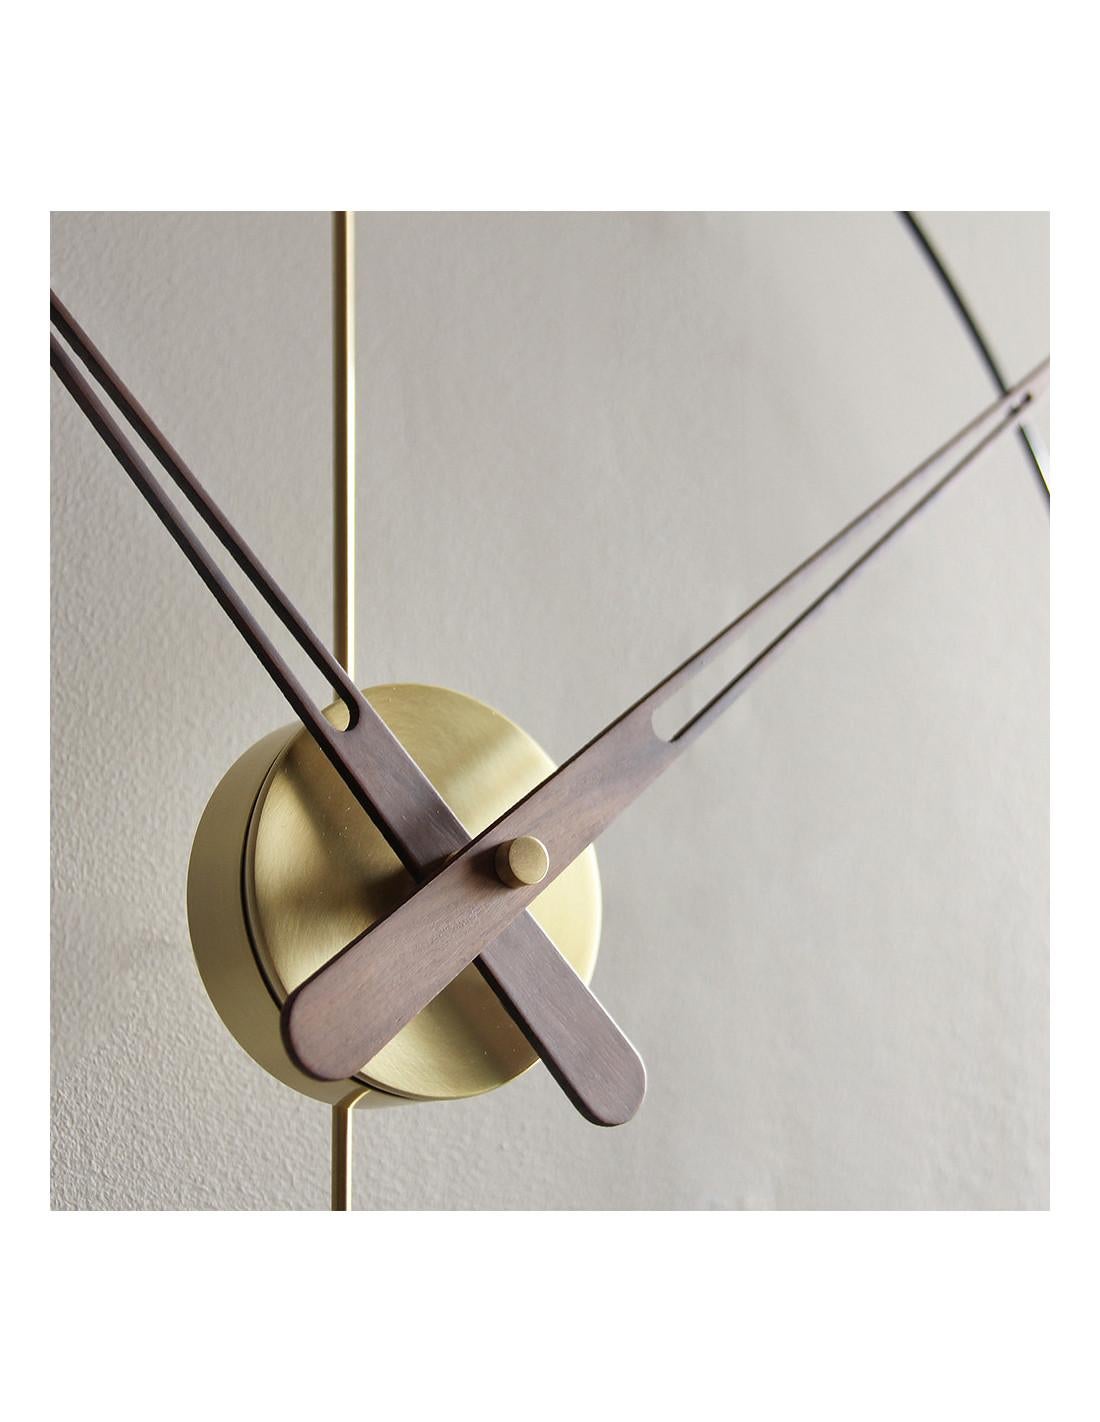 L'horloge Mini Bilbao G se distingue par son cercle lumineux qui lui donne la forme fine de l'accessoire. L'utilisation de lignes fines et délicates permet un design simple et minimaliste qui ne recharge pas la vue. 
Mini horloge murale Bilbao G :